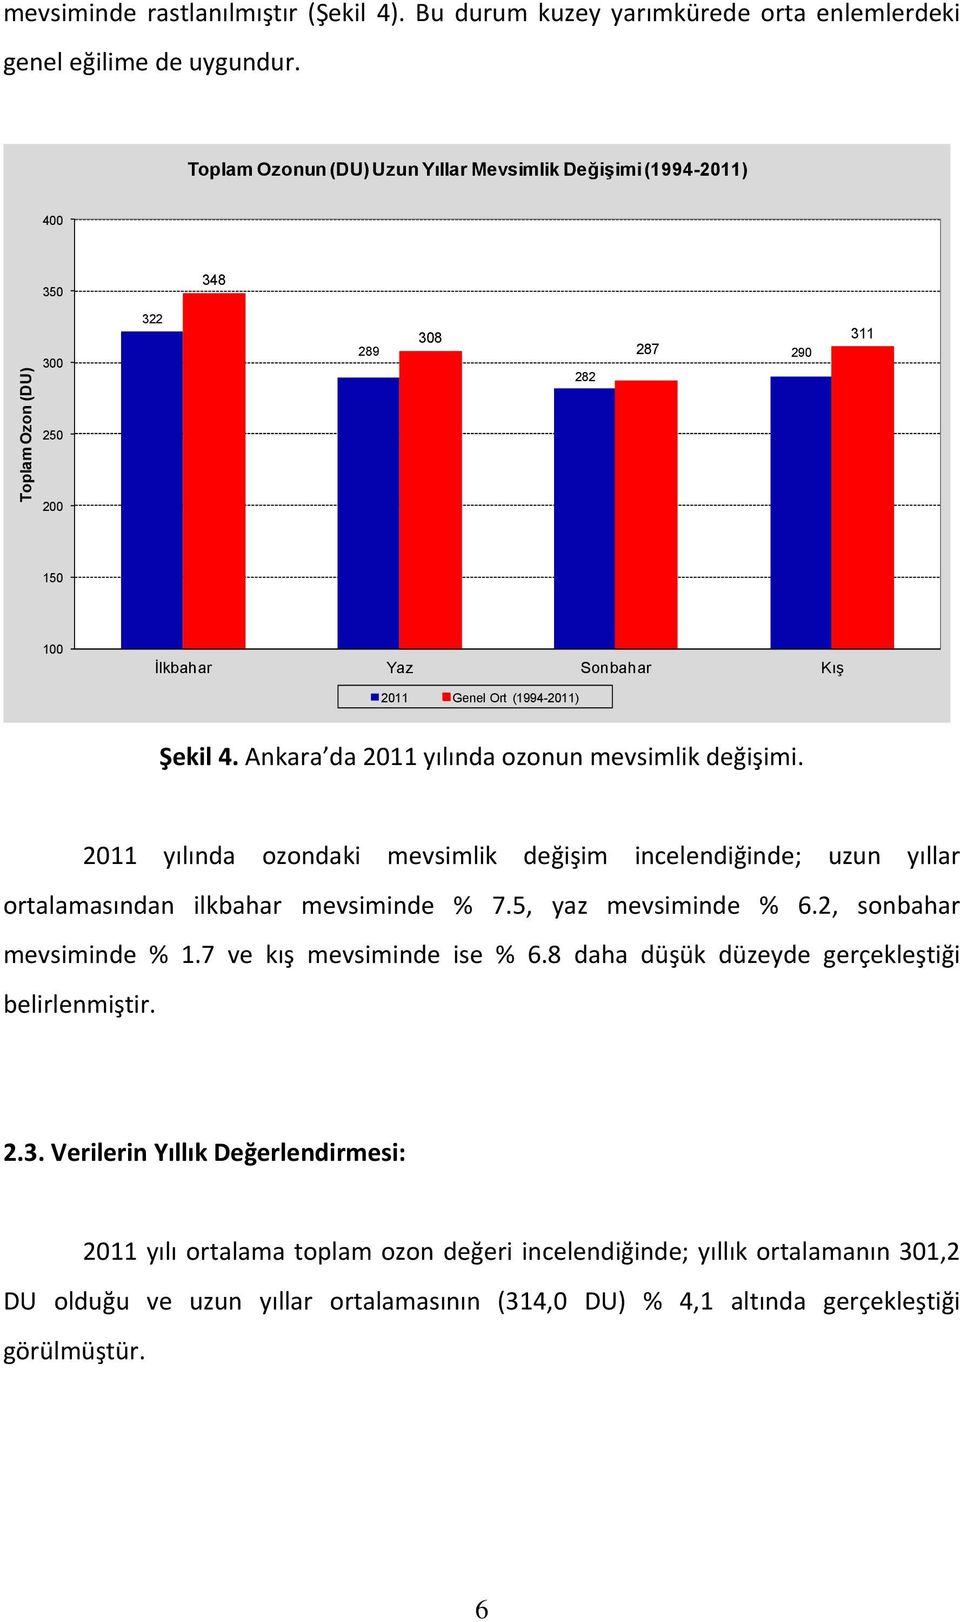 Ankara da 2011 yılında ozonun mevsimlik değişimi. 2011 yılında ozondaki mevsimlik değişim incelendiğinde; uzun yıllar ortalamasından ilkbahar mevsiminde % 7.5, yaz mevsiminde % 6.